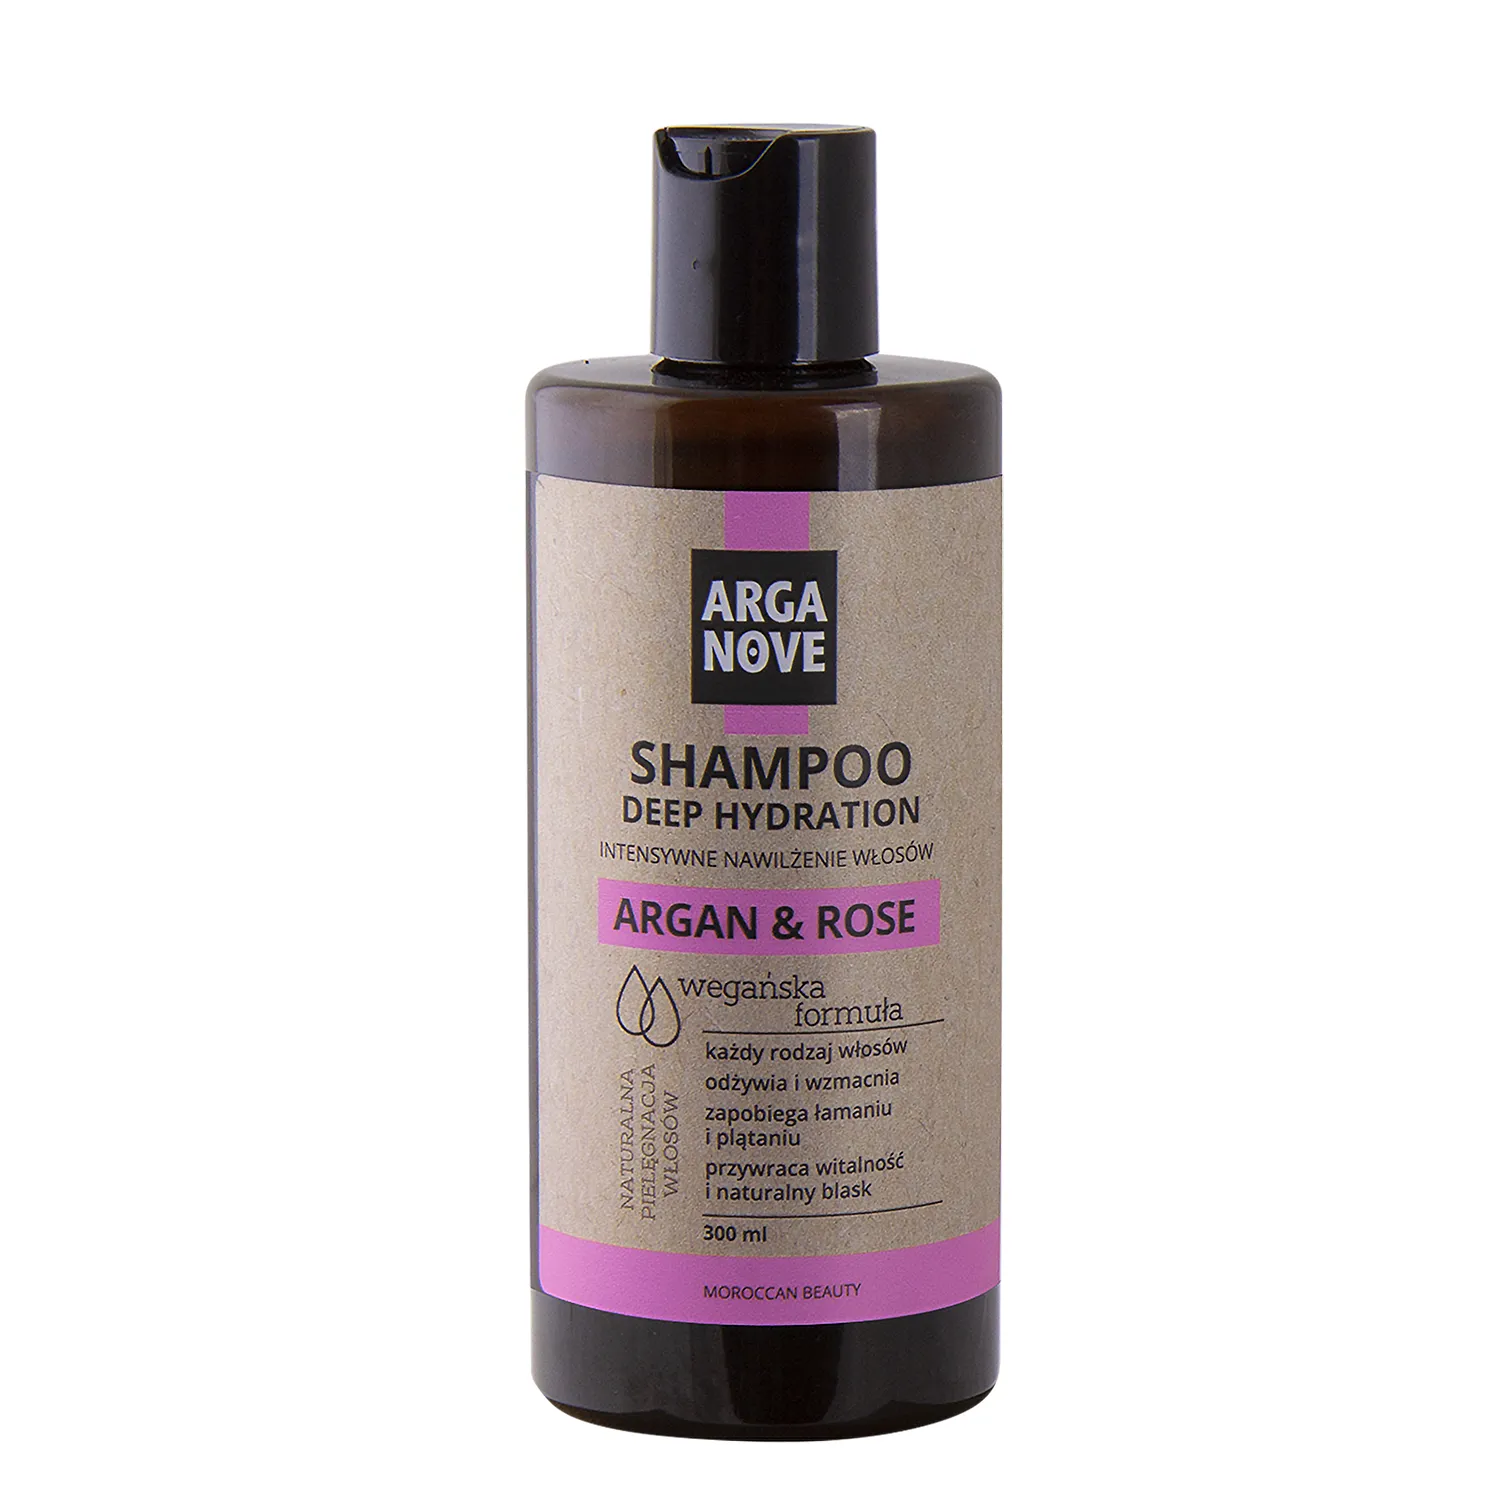 Arganove szampon intensywnie nawilżający z olejem arganowym, różą damasceńską i białą glinką, 300 ml